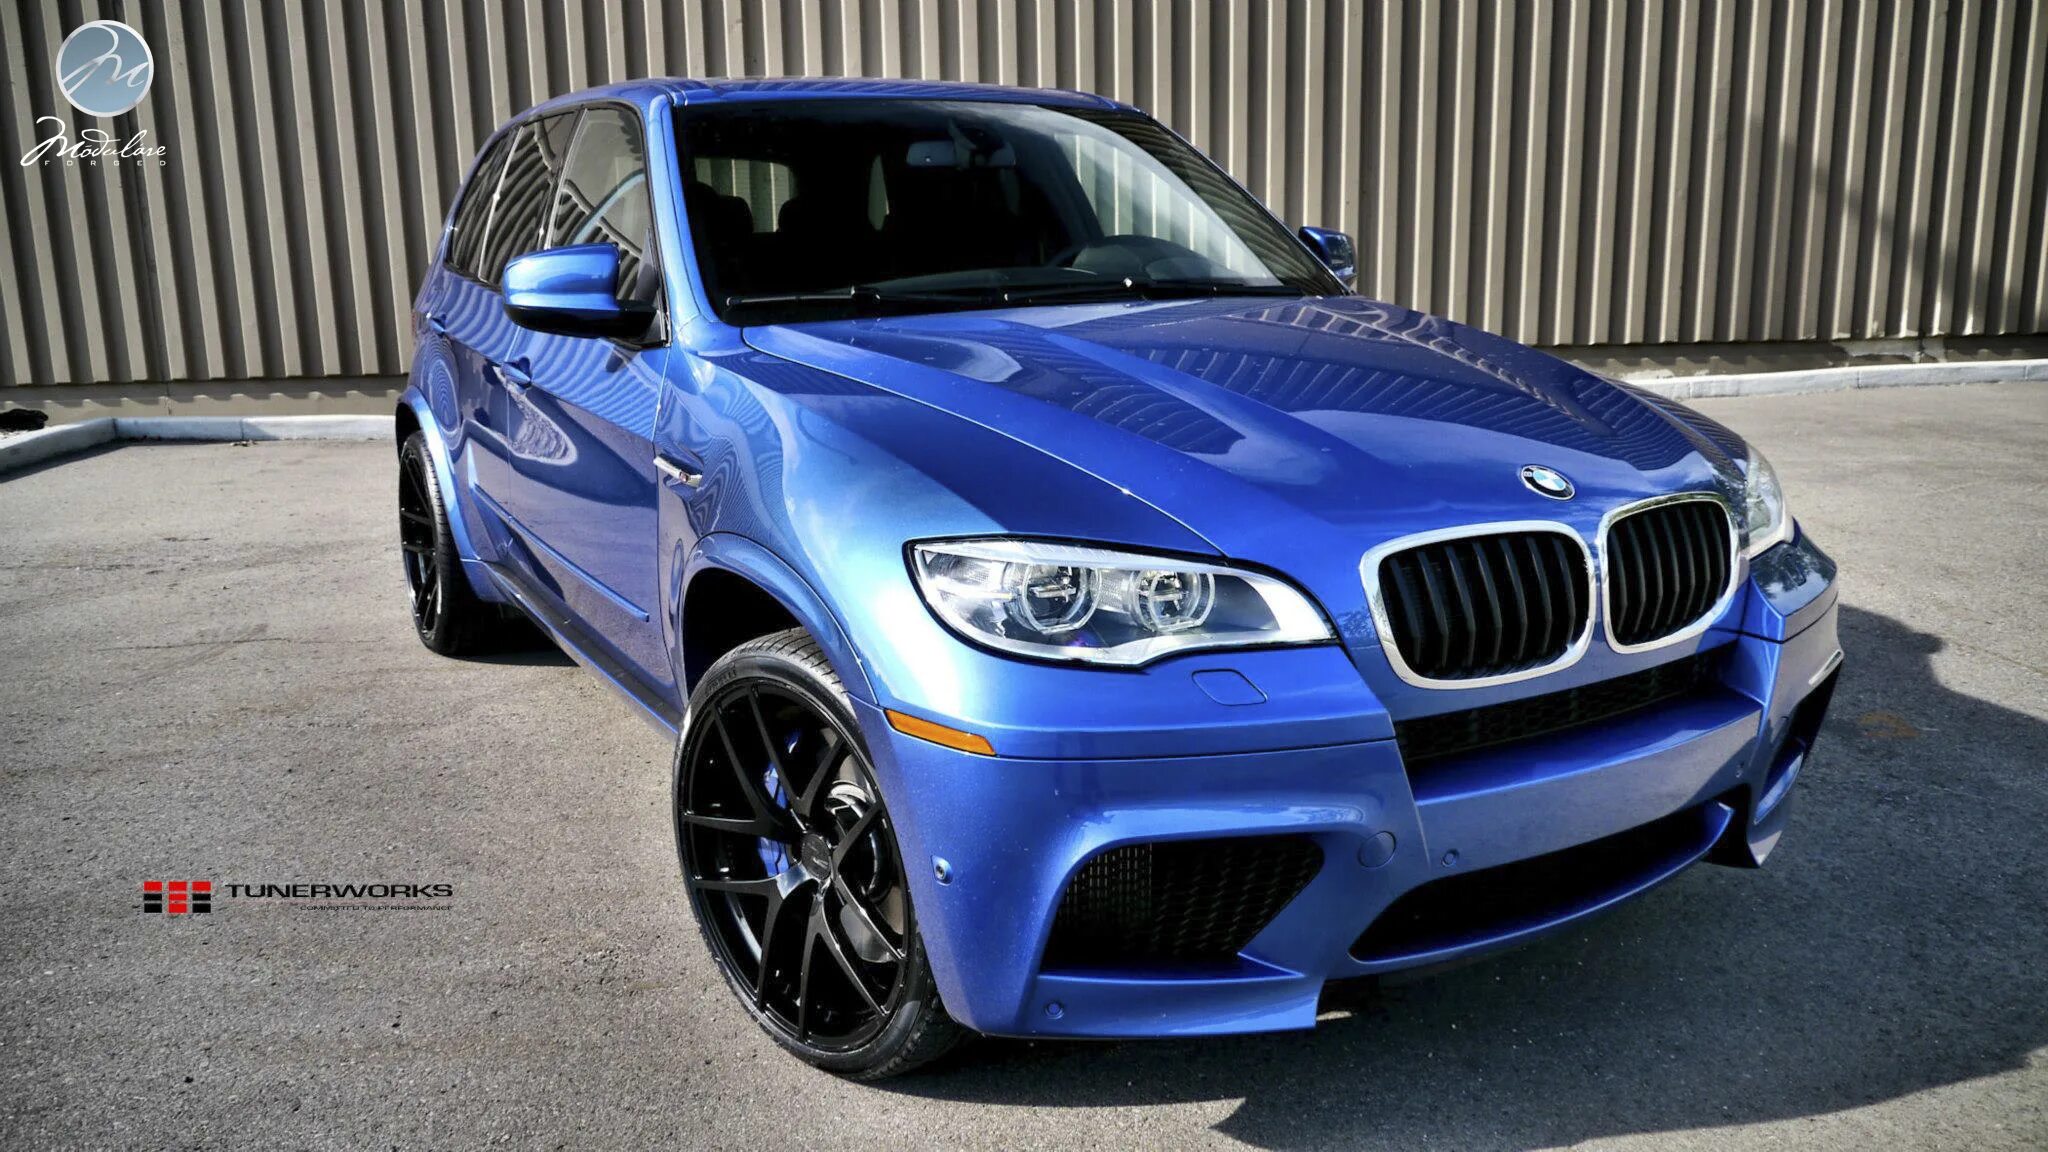 Bmw x5 цвета. BMW x5 m Blue. БМВ x5m синий. BMW x5 голубой. БМВ х5 темно синий.